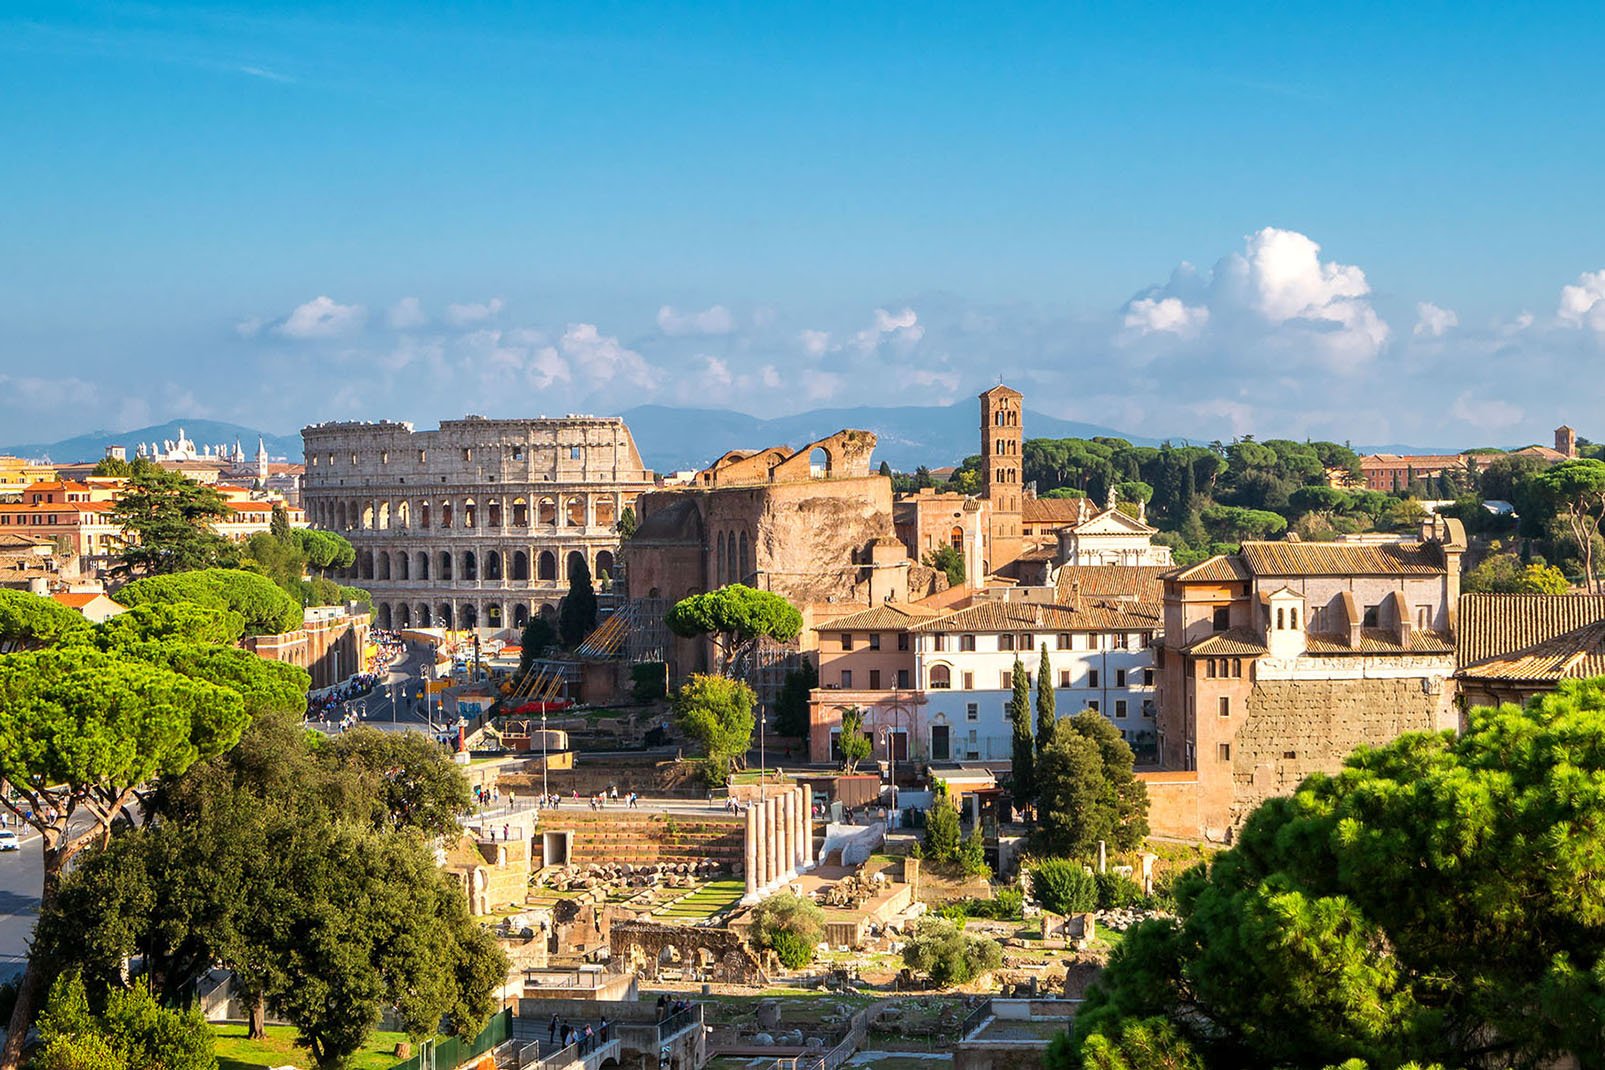 Entre le Capitole et le mont Palatin s'étend le plus grand site archéologique antique de Rome, comprenant entre autres le Colisée (à dr.) et le Forum Romain, place essentielle de la vie romaine sous l'Antiquité.